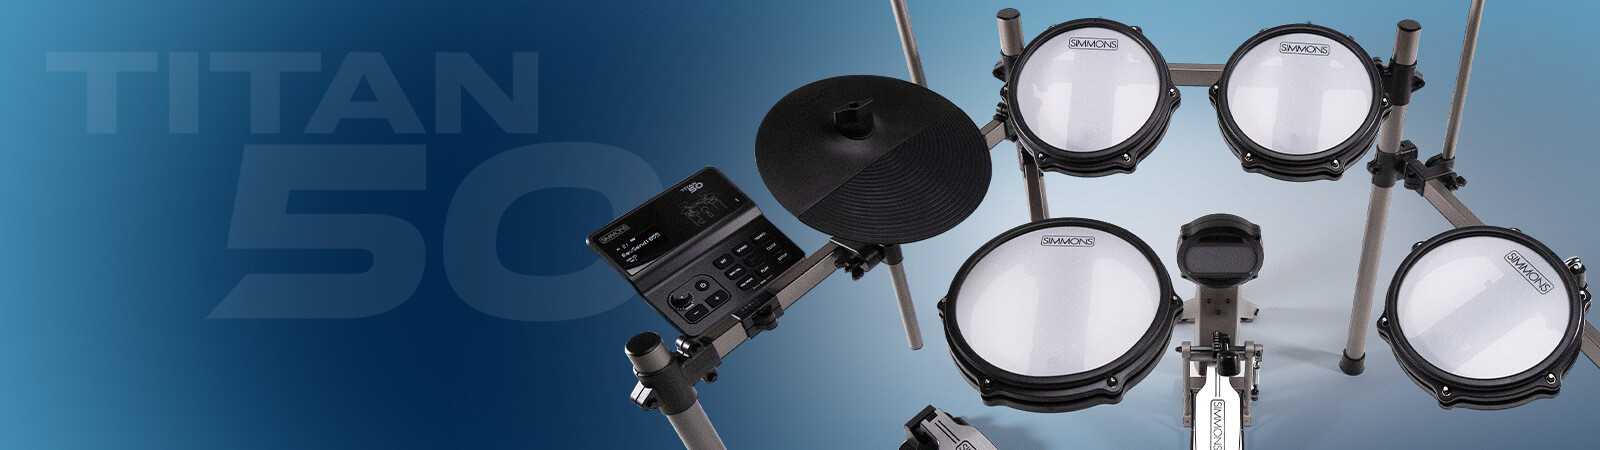 Titan 50 electronic drum kit